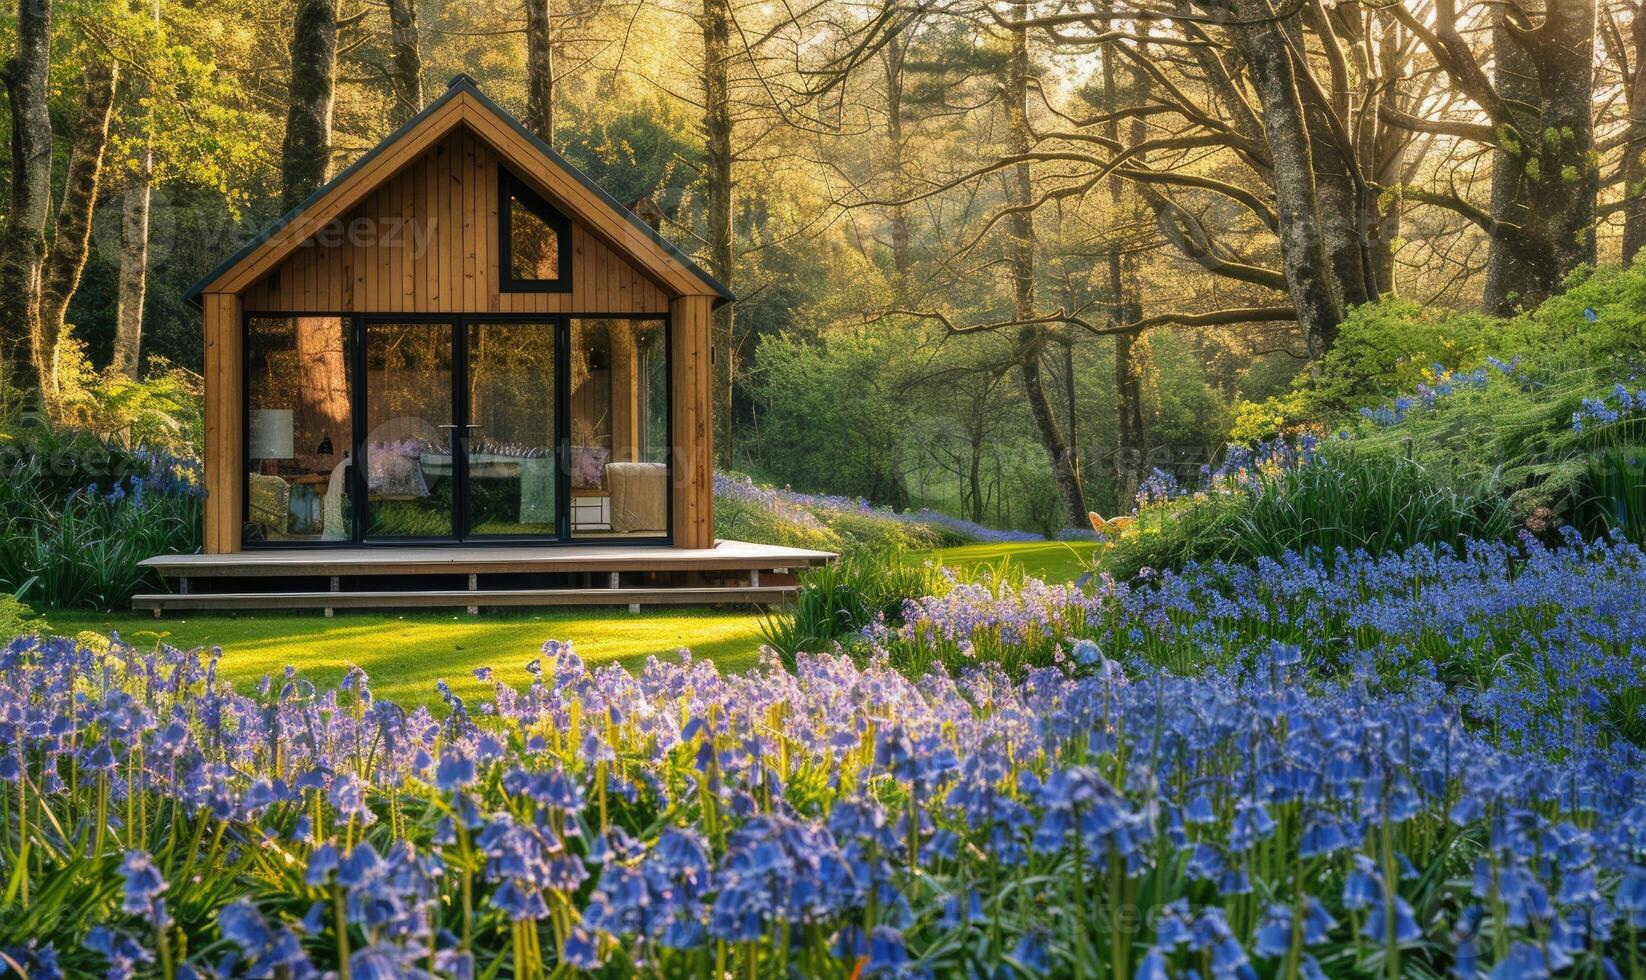 un sereno moderno de madera cabina rodeado por un lozano alfombra de campanillas y nomeolvides en un pacífico primavera jardín foto